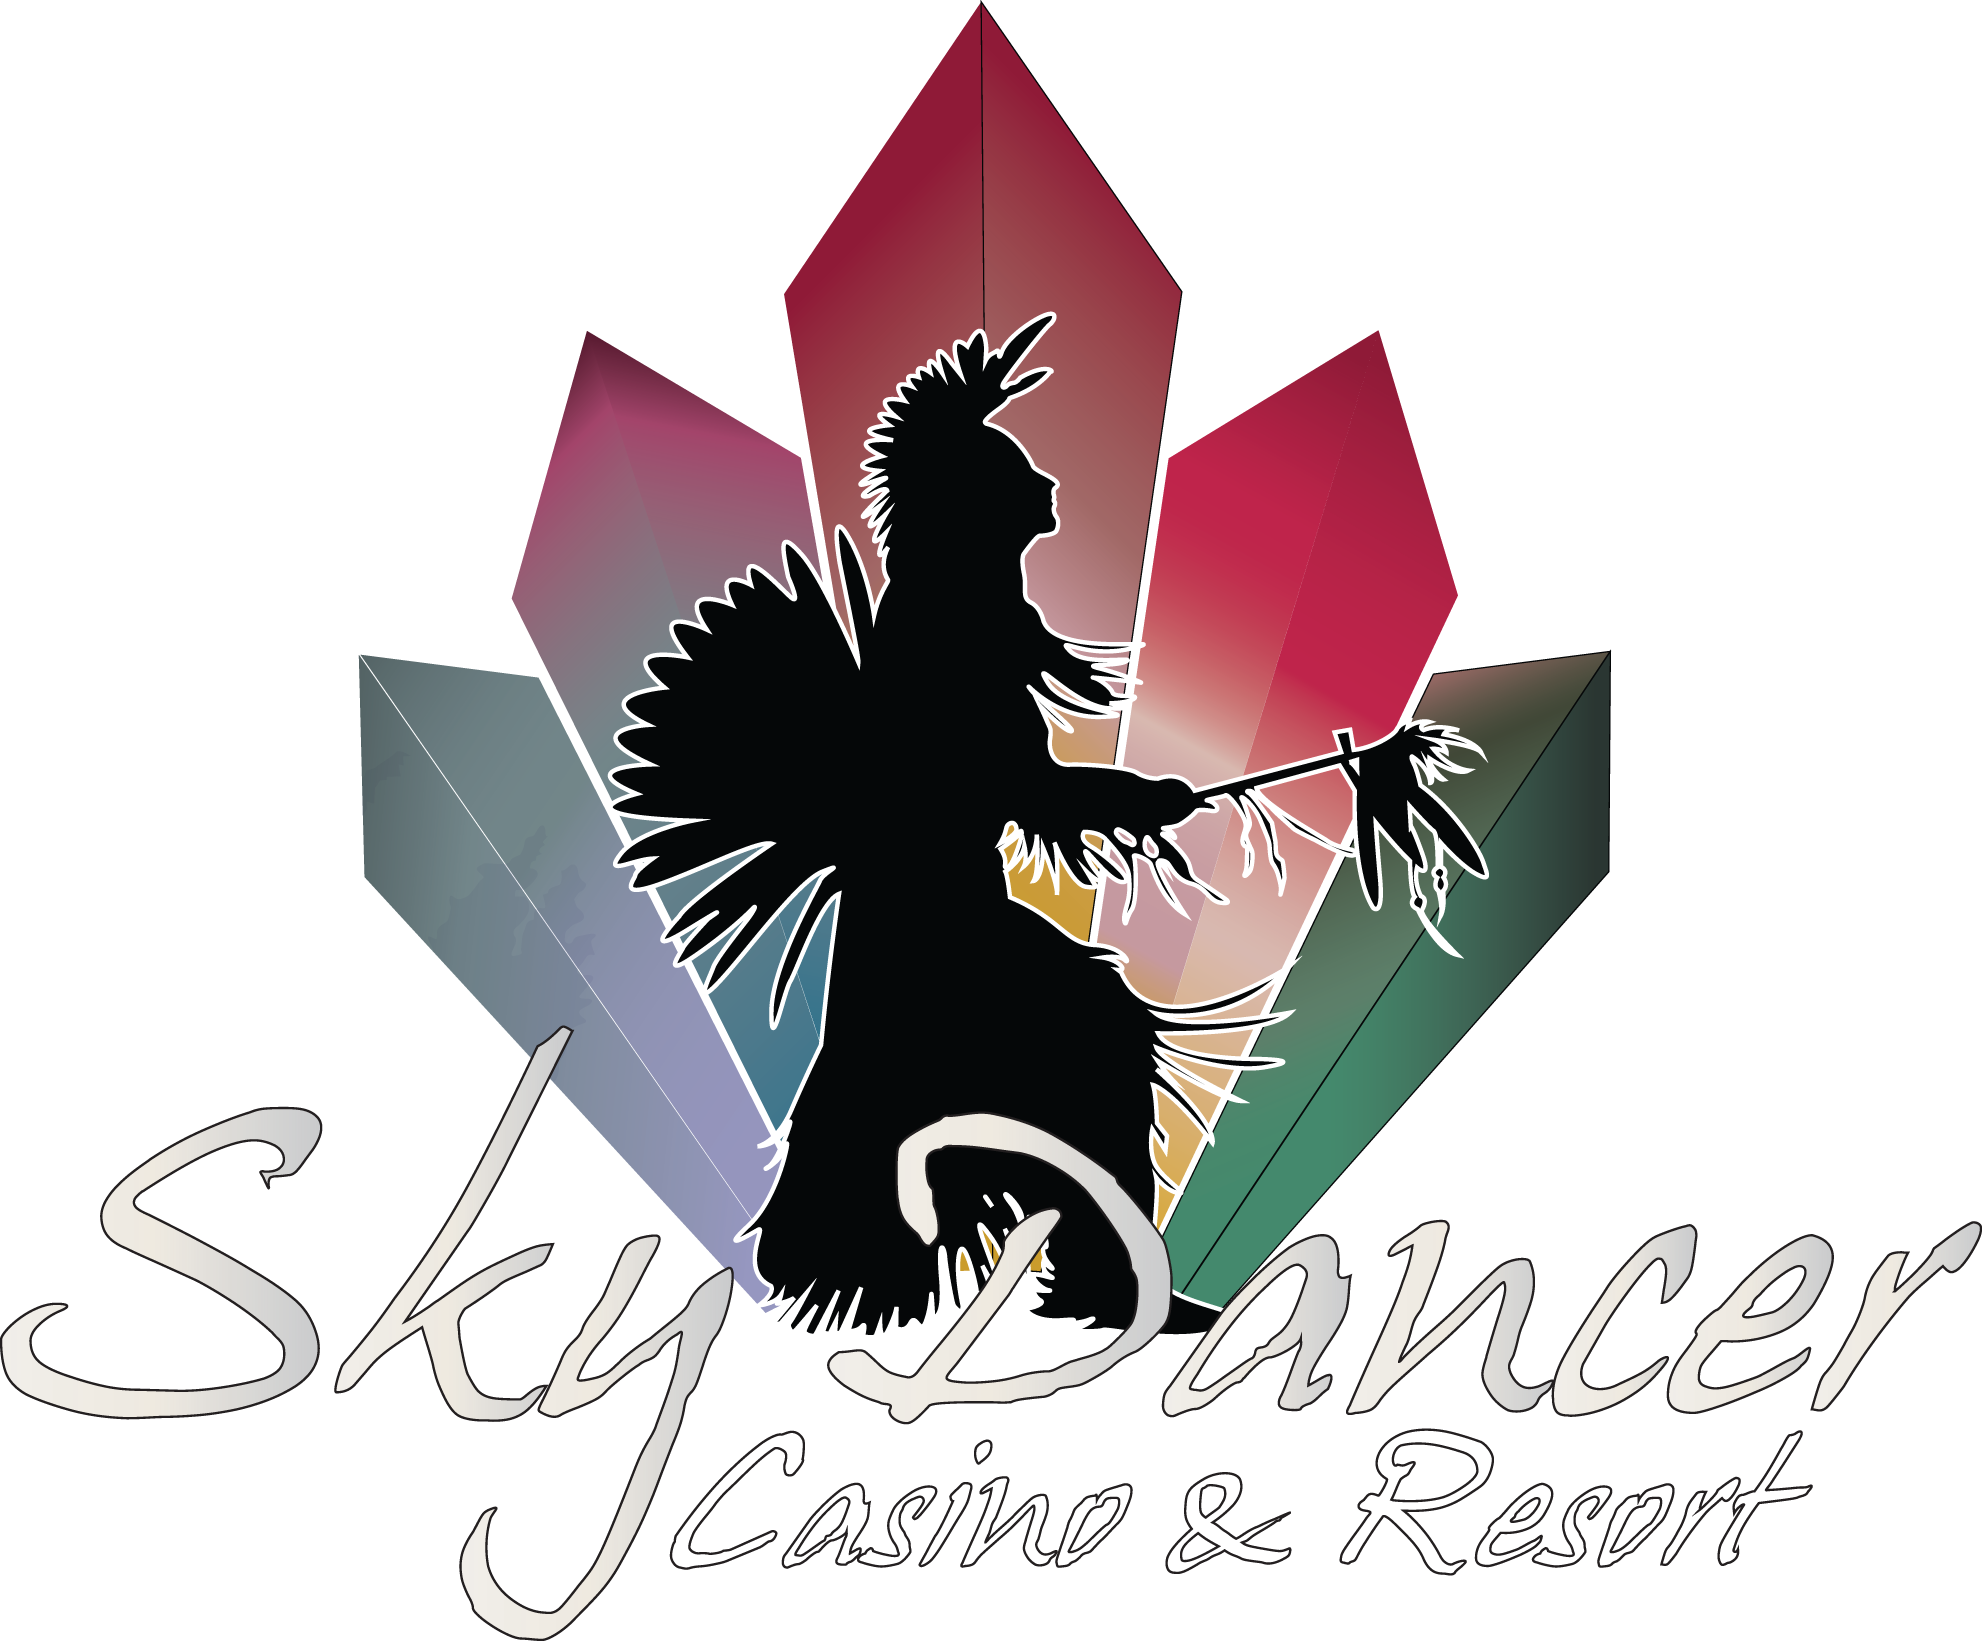 Sky Dancer Logo recreated (3) white letters